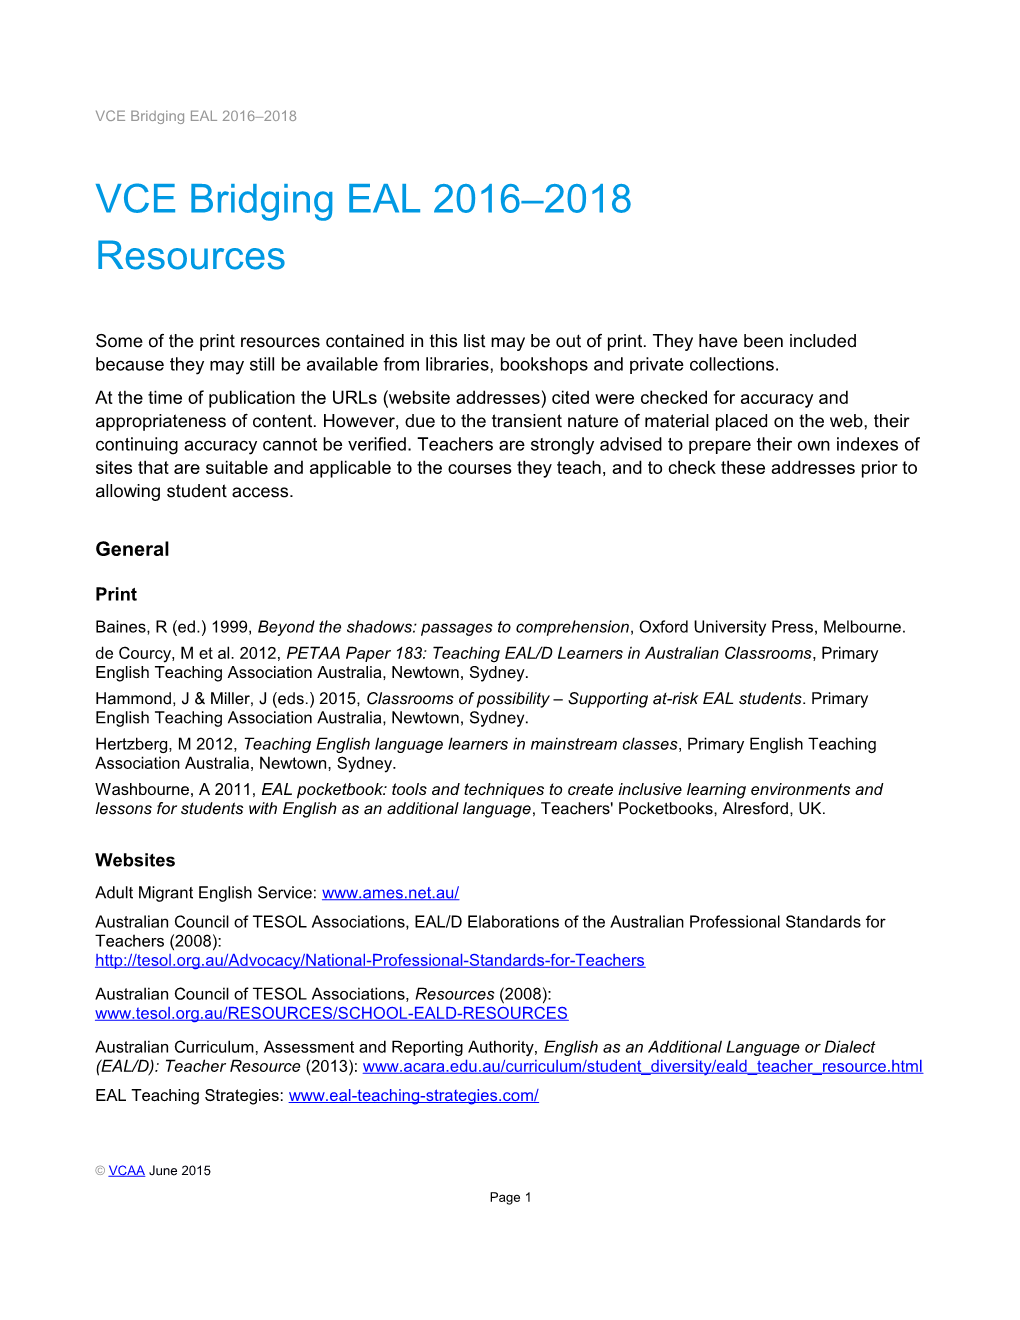 VCE Bridging EAL 2016 2018